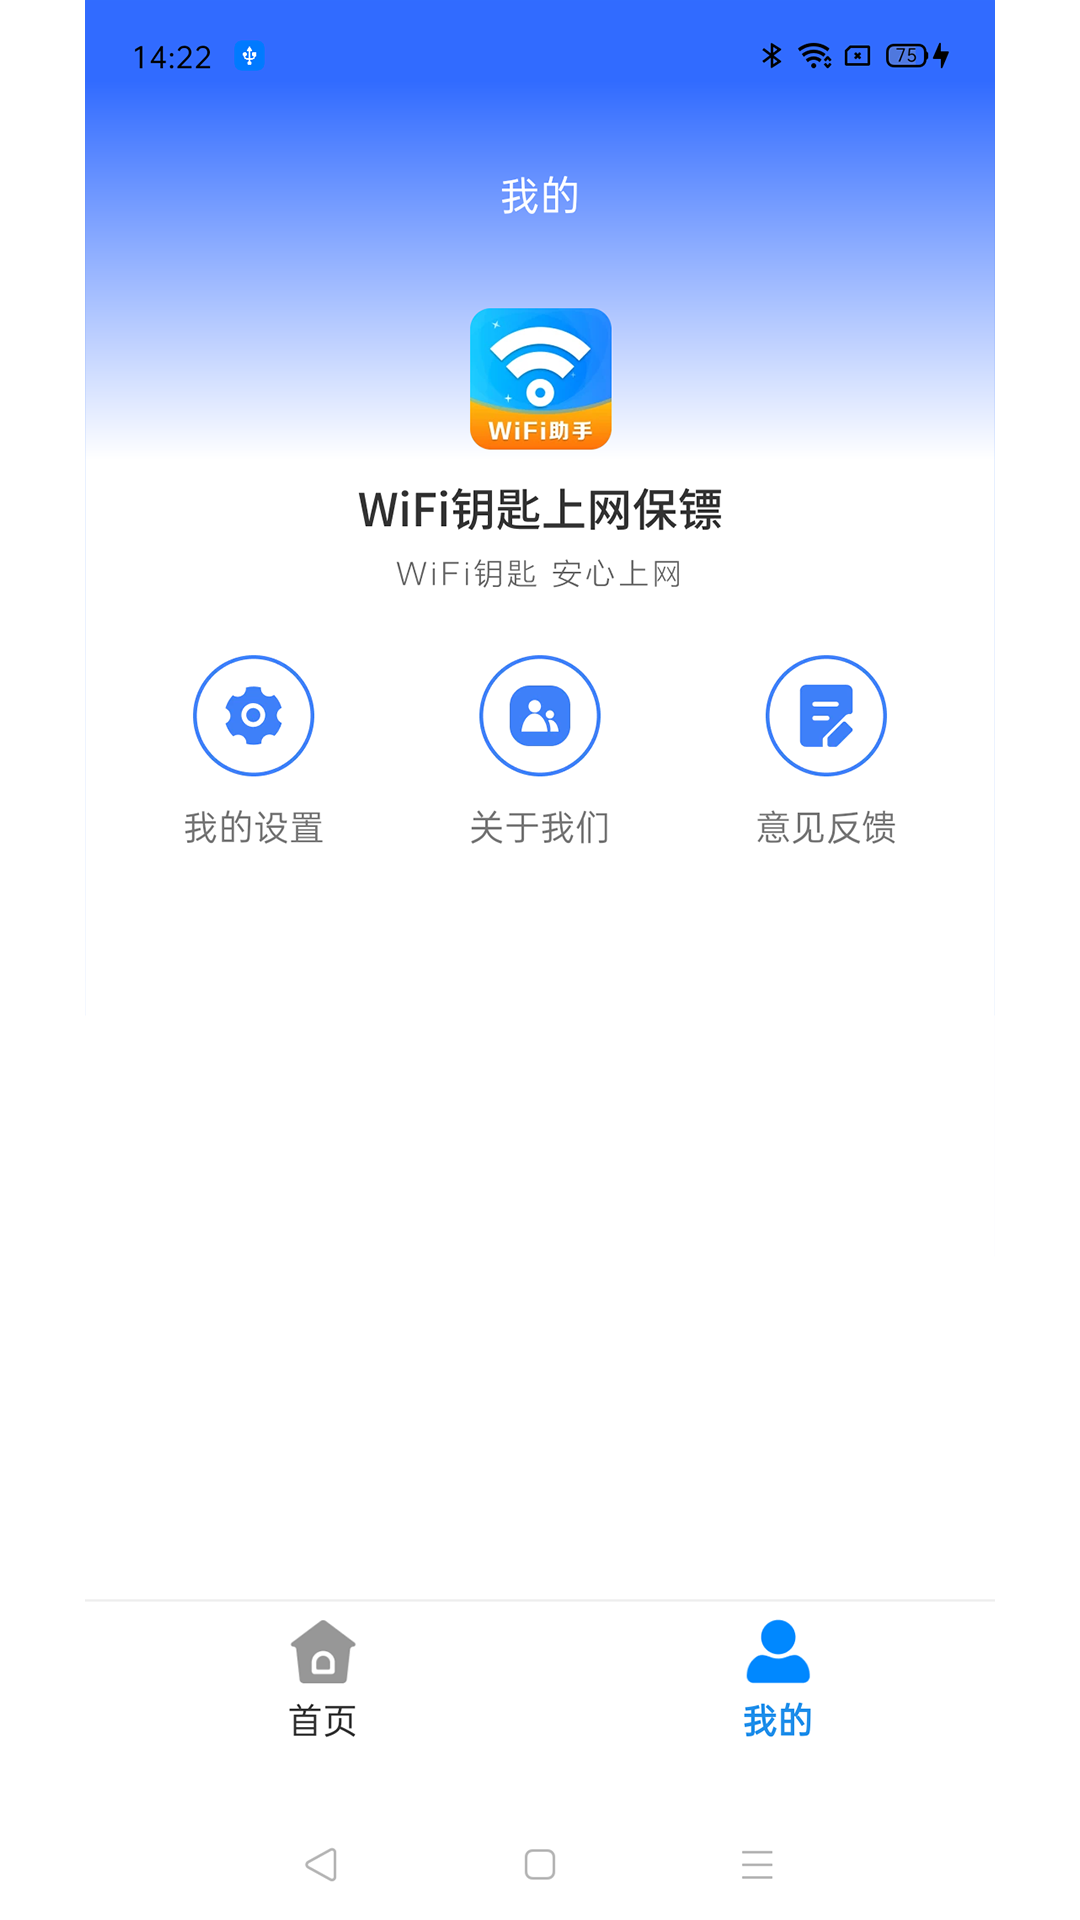 WiFi钥匙上网保镖软件官方版图片1